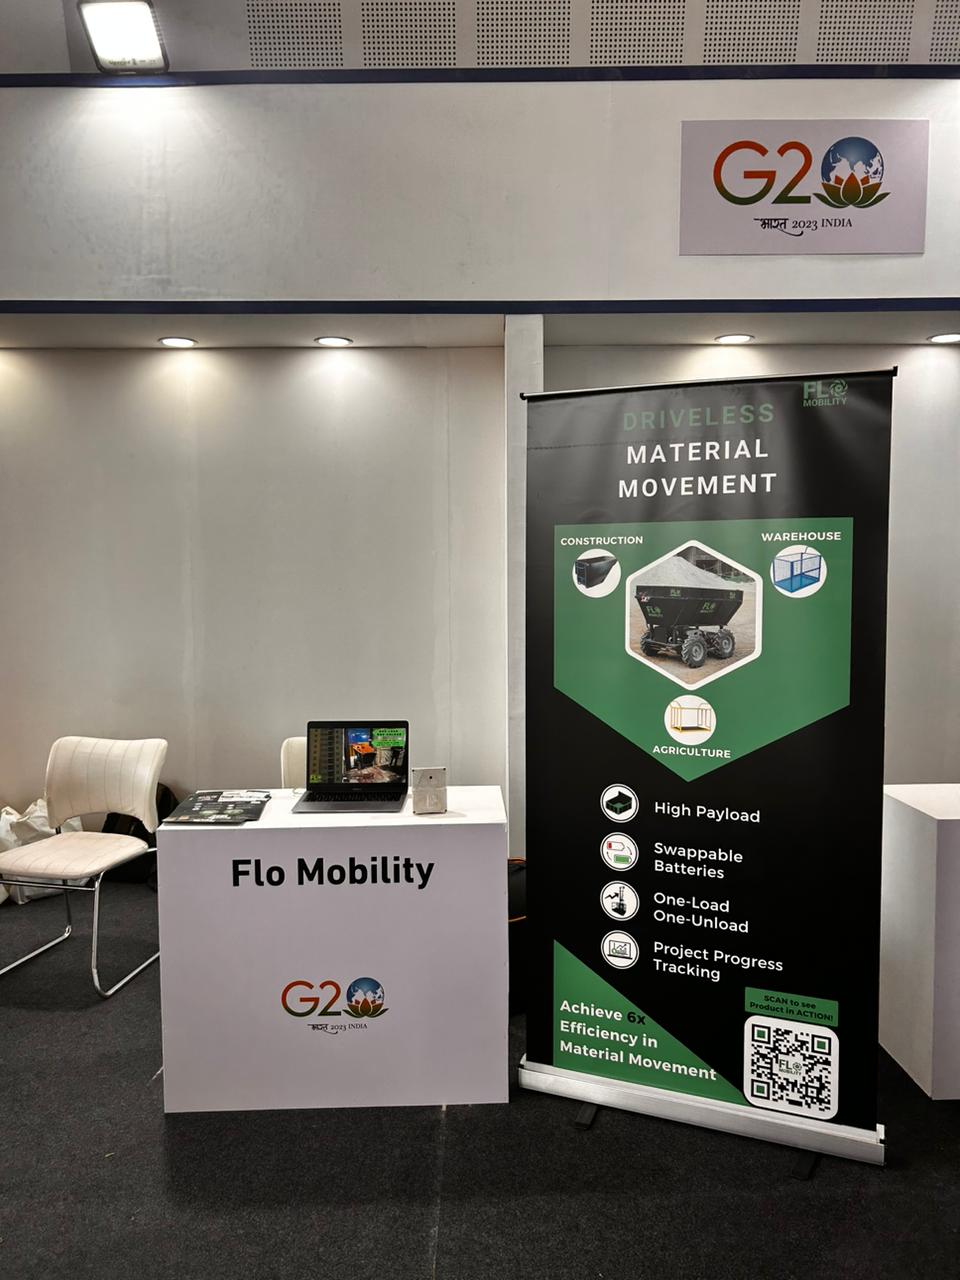 Flo Mobility at G20 2023 summit in Gandhinagar